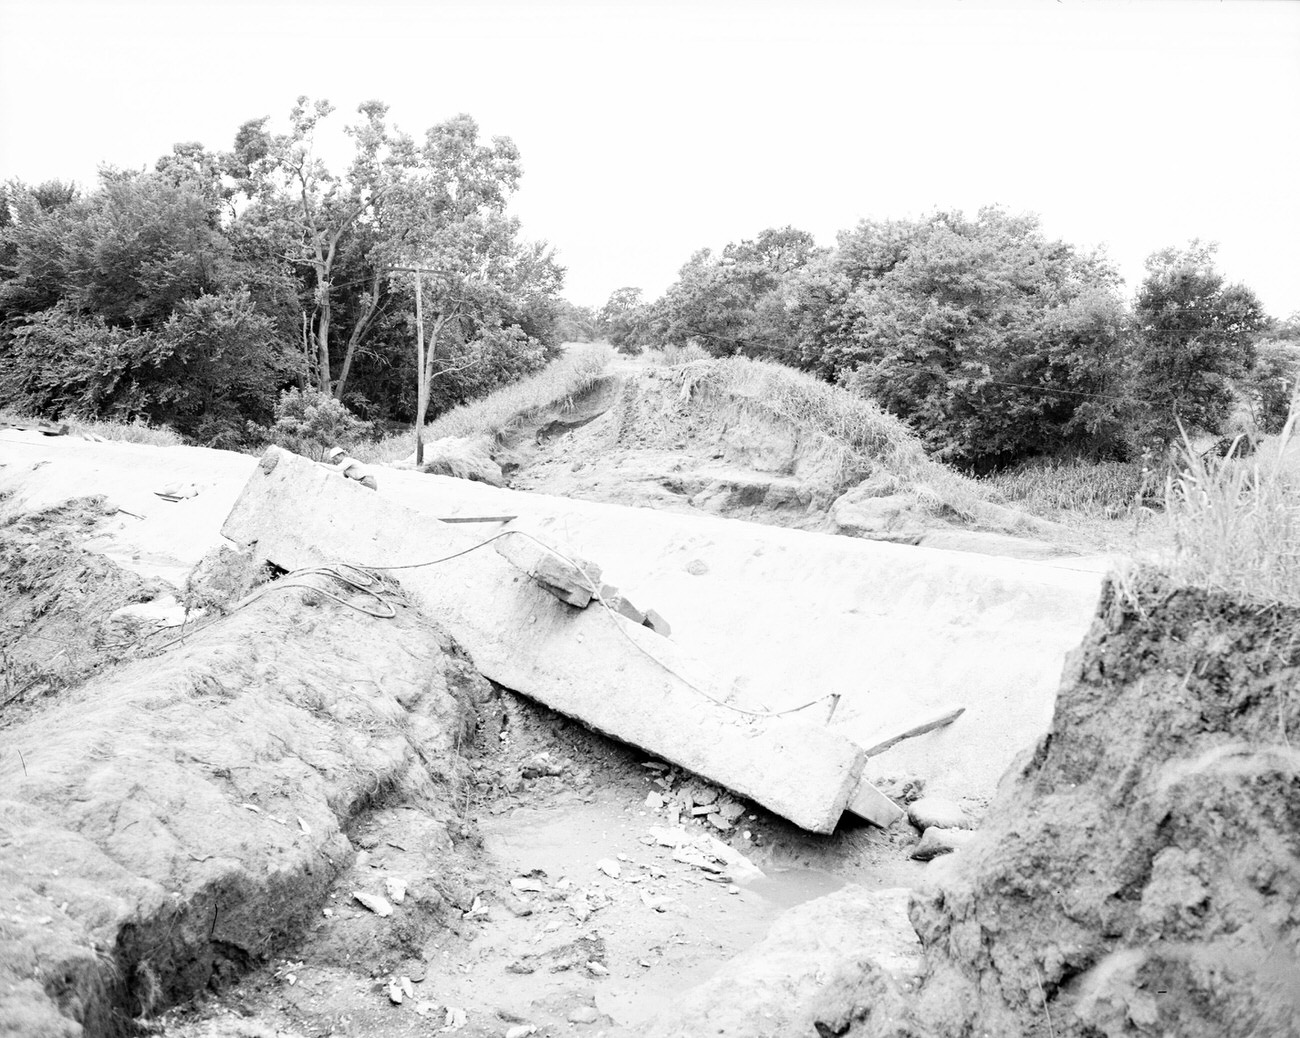 Levee break flood scene, 1949